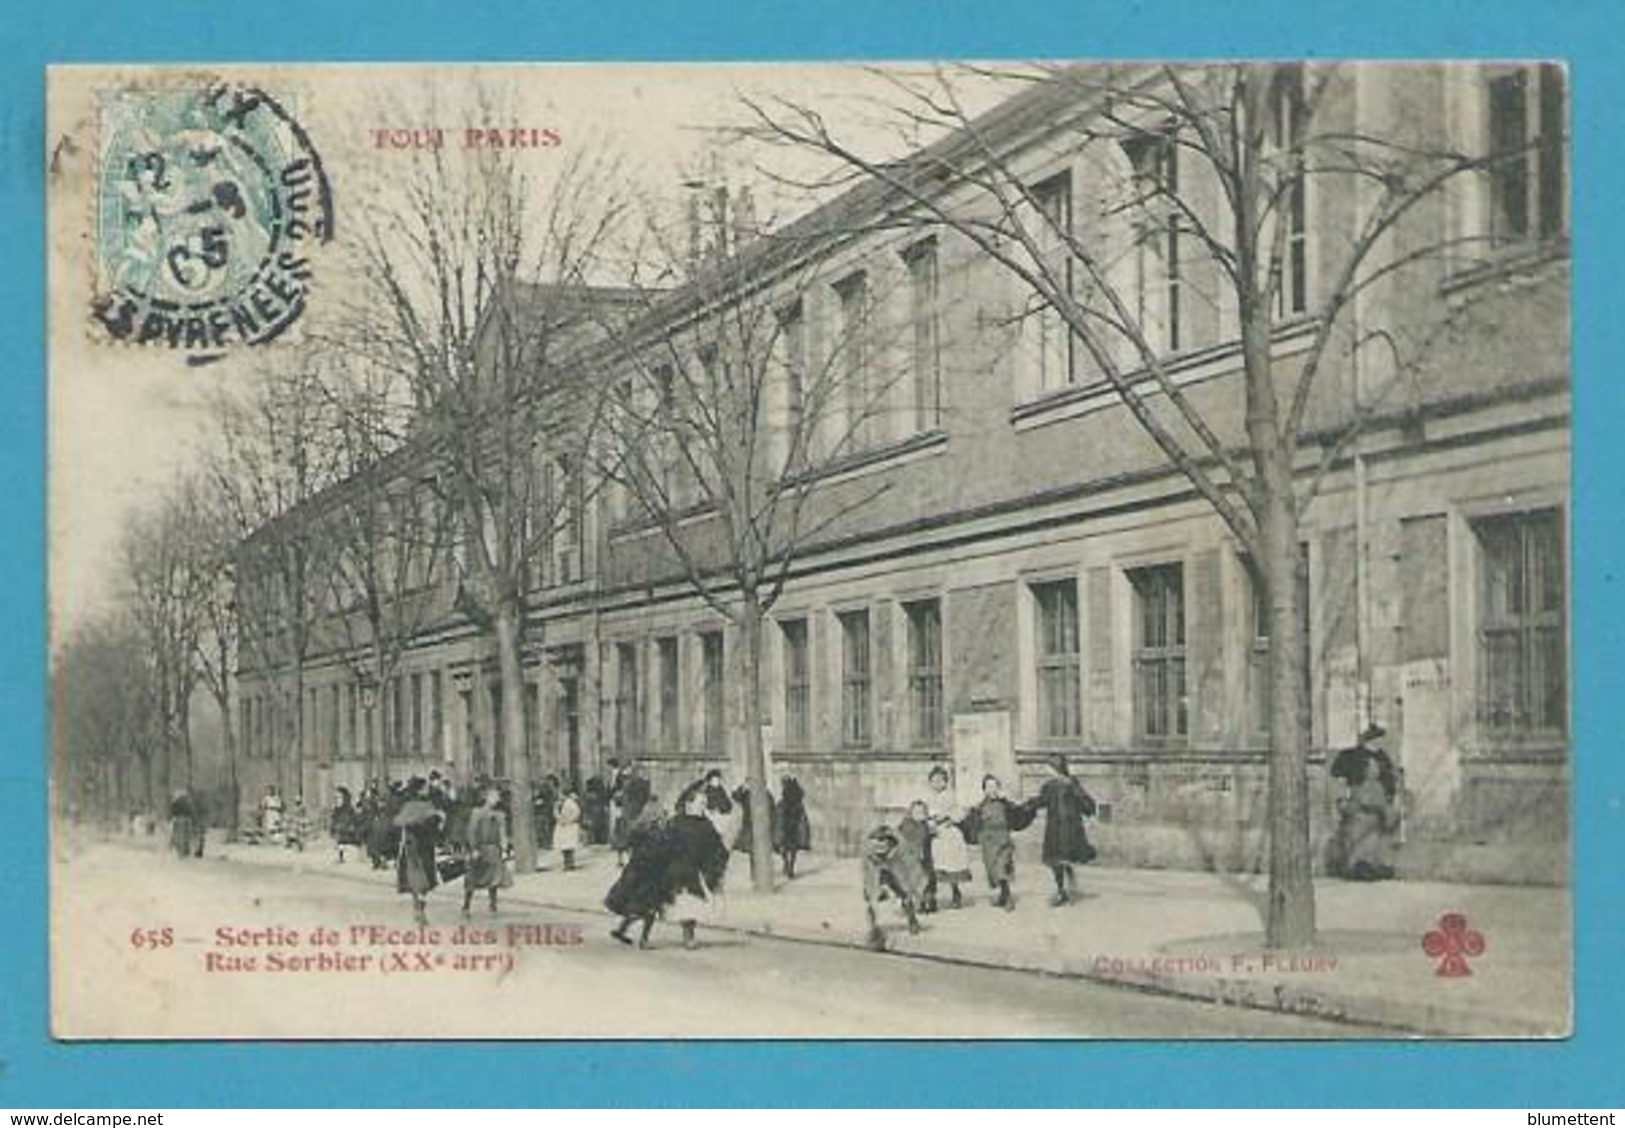 CPA 658 TOUT PARIS - Sortie De L'Ecole Des Filles Rue Sorbier (XXème) - Editeur FLEURY - Distrito: 20